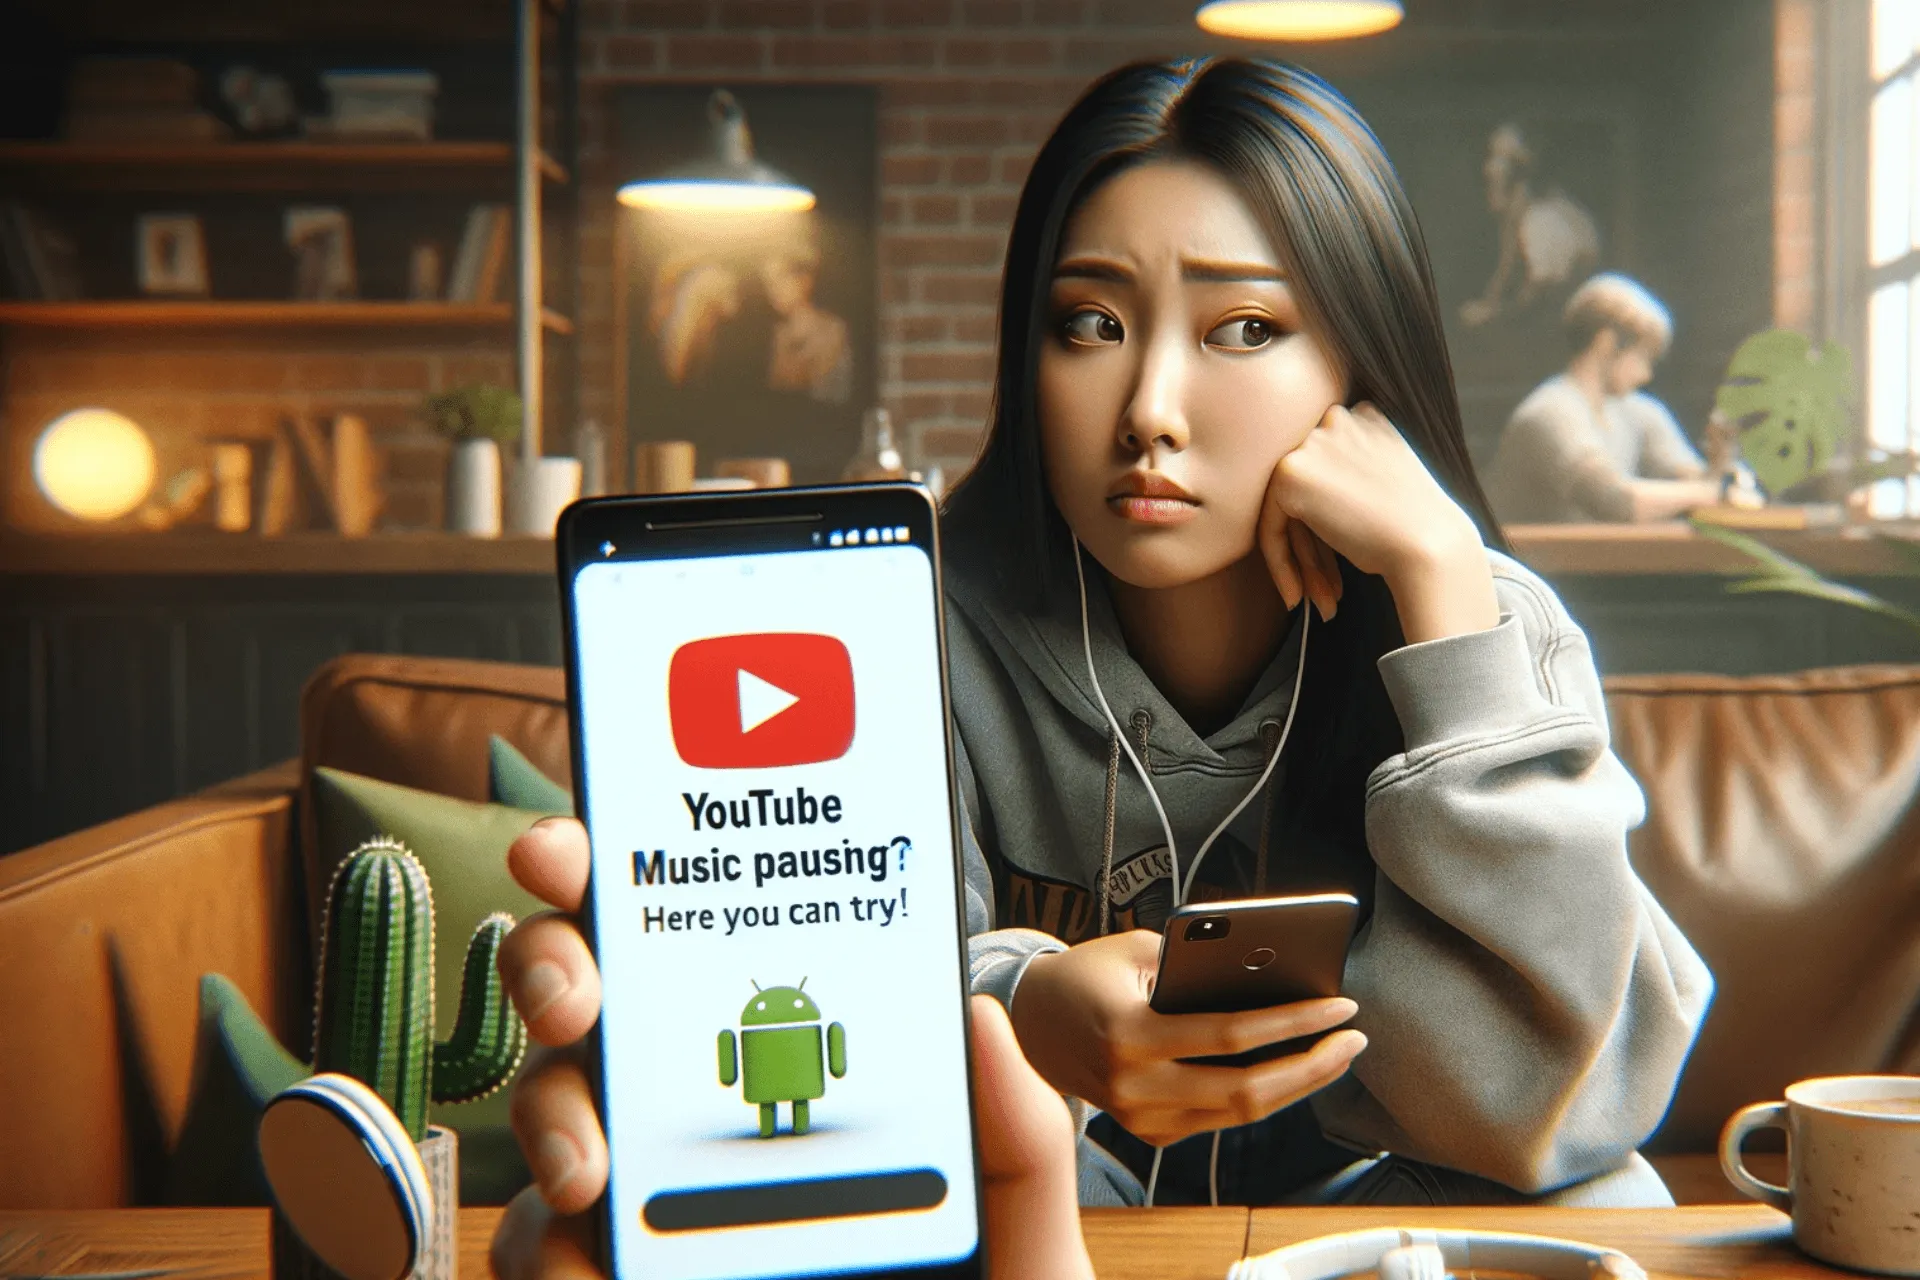 ¿La música de YouTube sigue en pausa? ¡Aquí hay soluciones que puede probar!